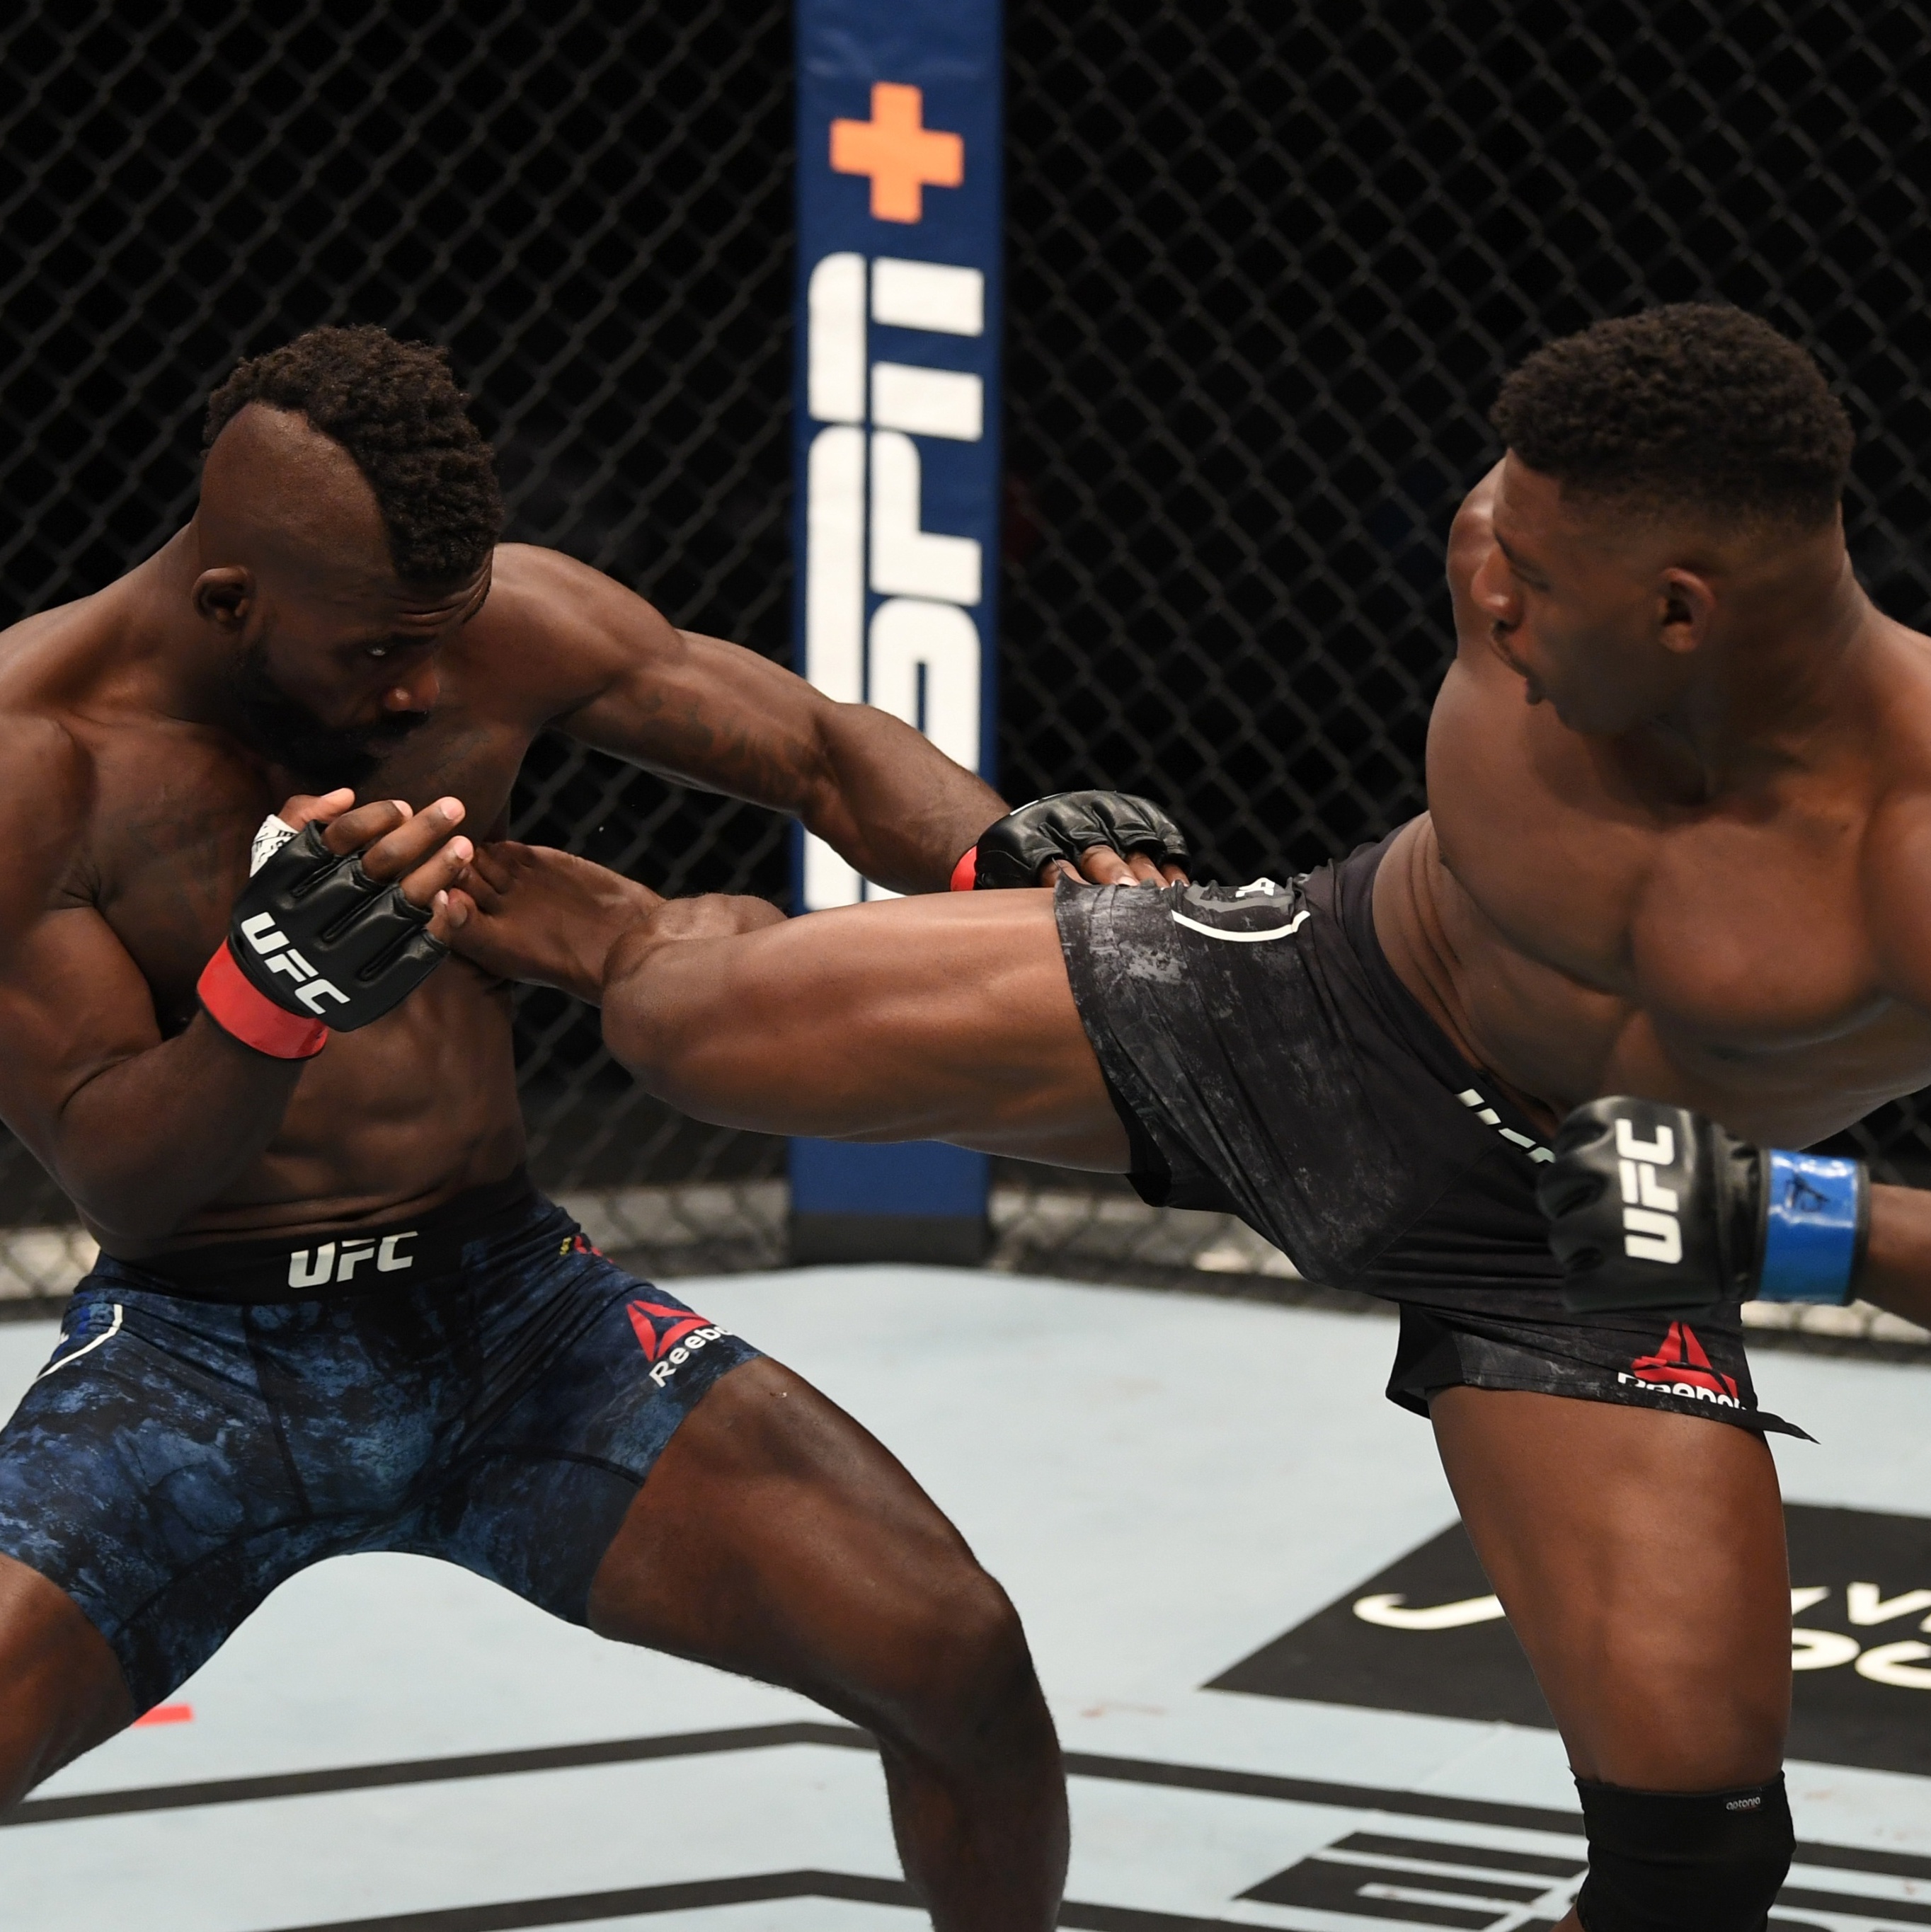 DingSports: Gigante troca luta de marmelada pelo MMA, diz site